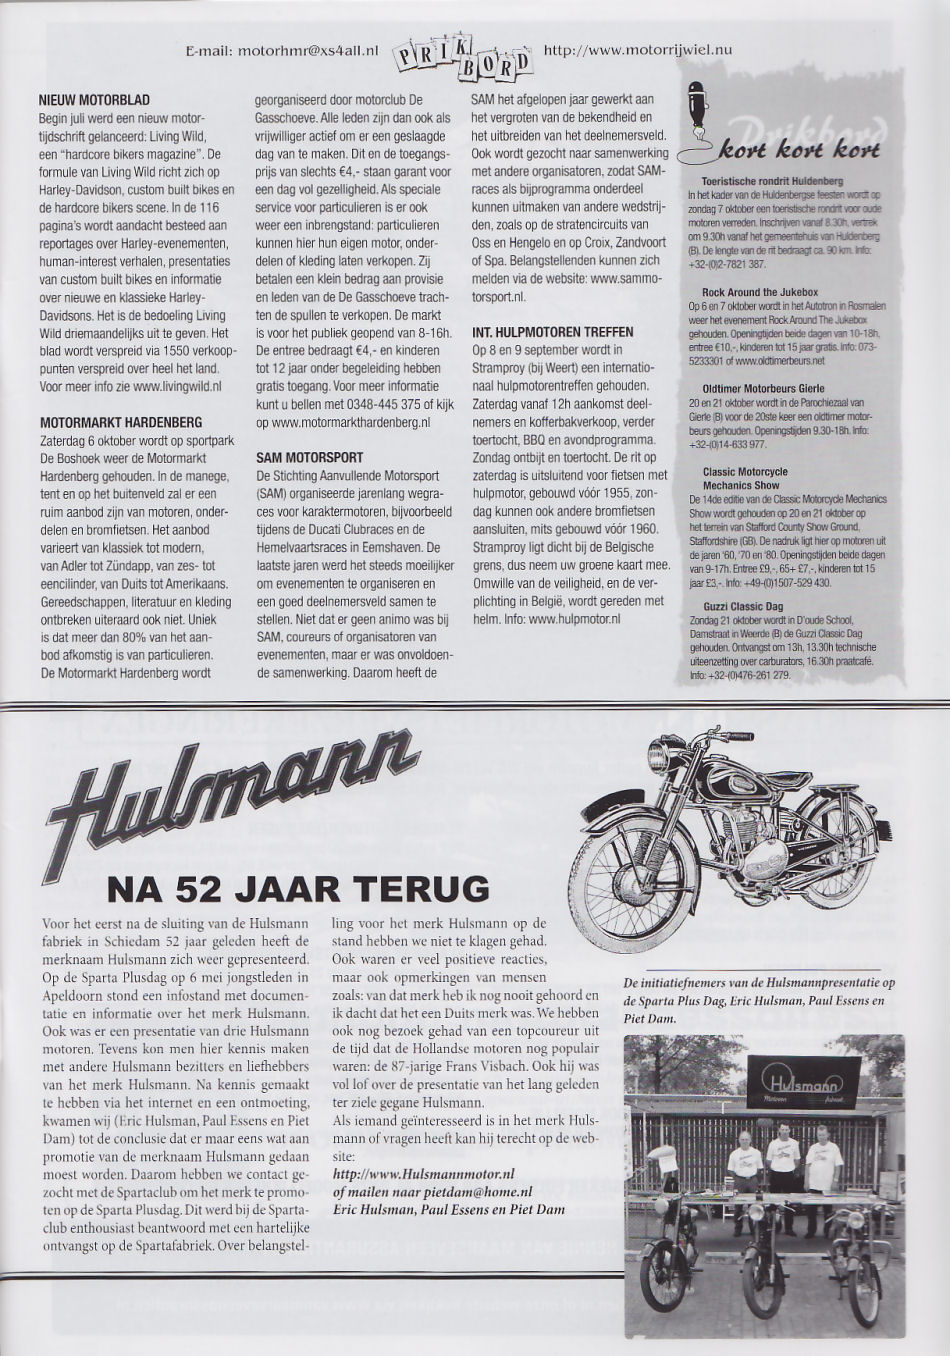 Hulsmann na 52 jaar terug - Het Motorrijwiel 89-2007